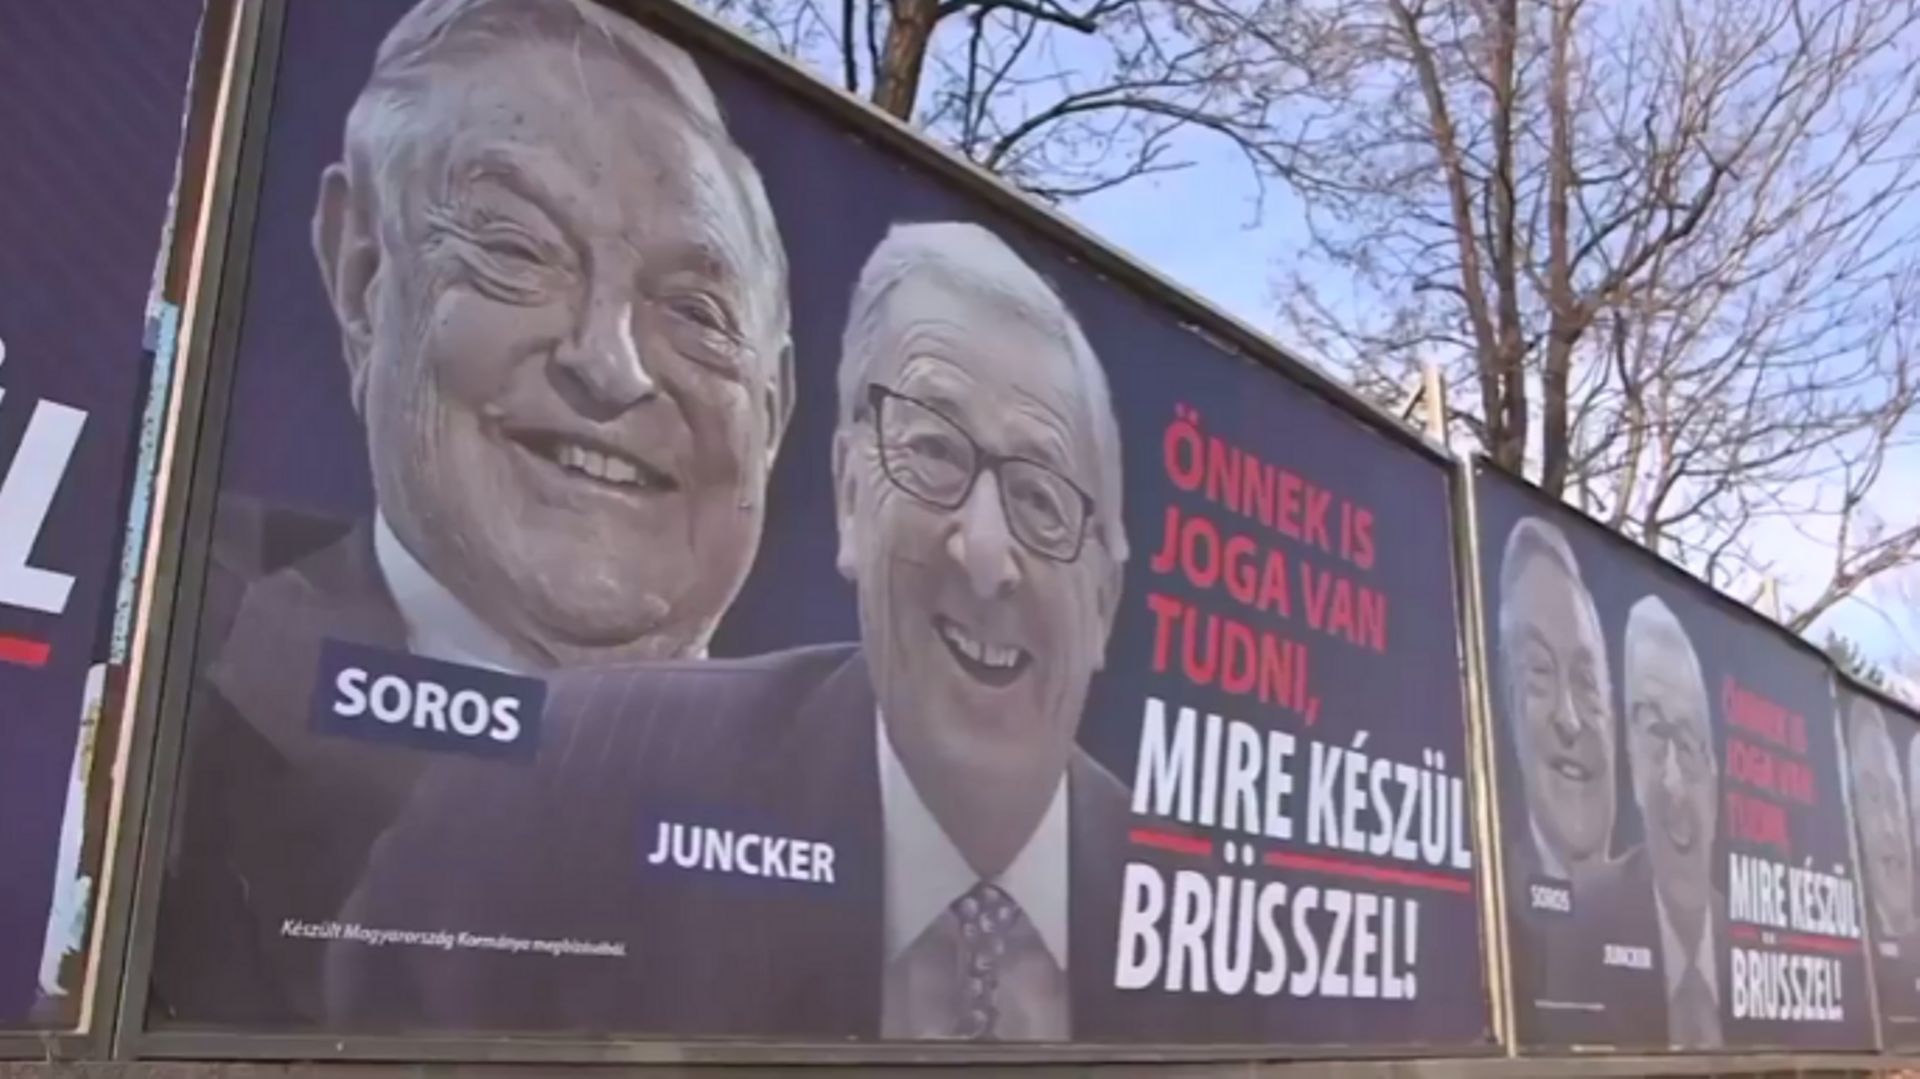 Des affiches europhobes payées par le gouvernement hongrois